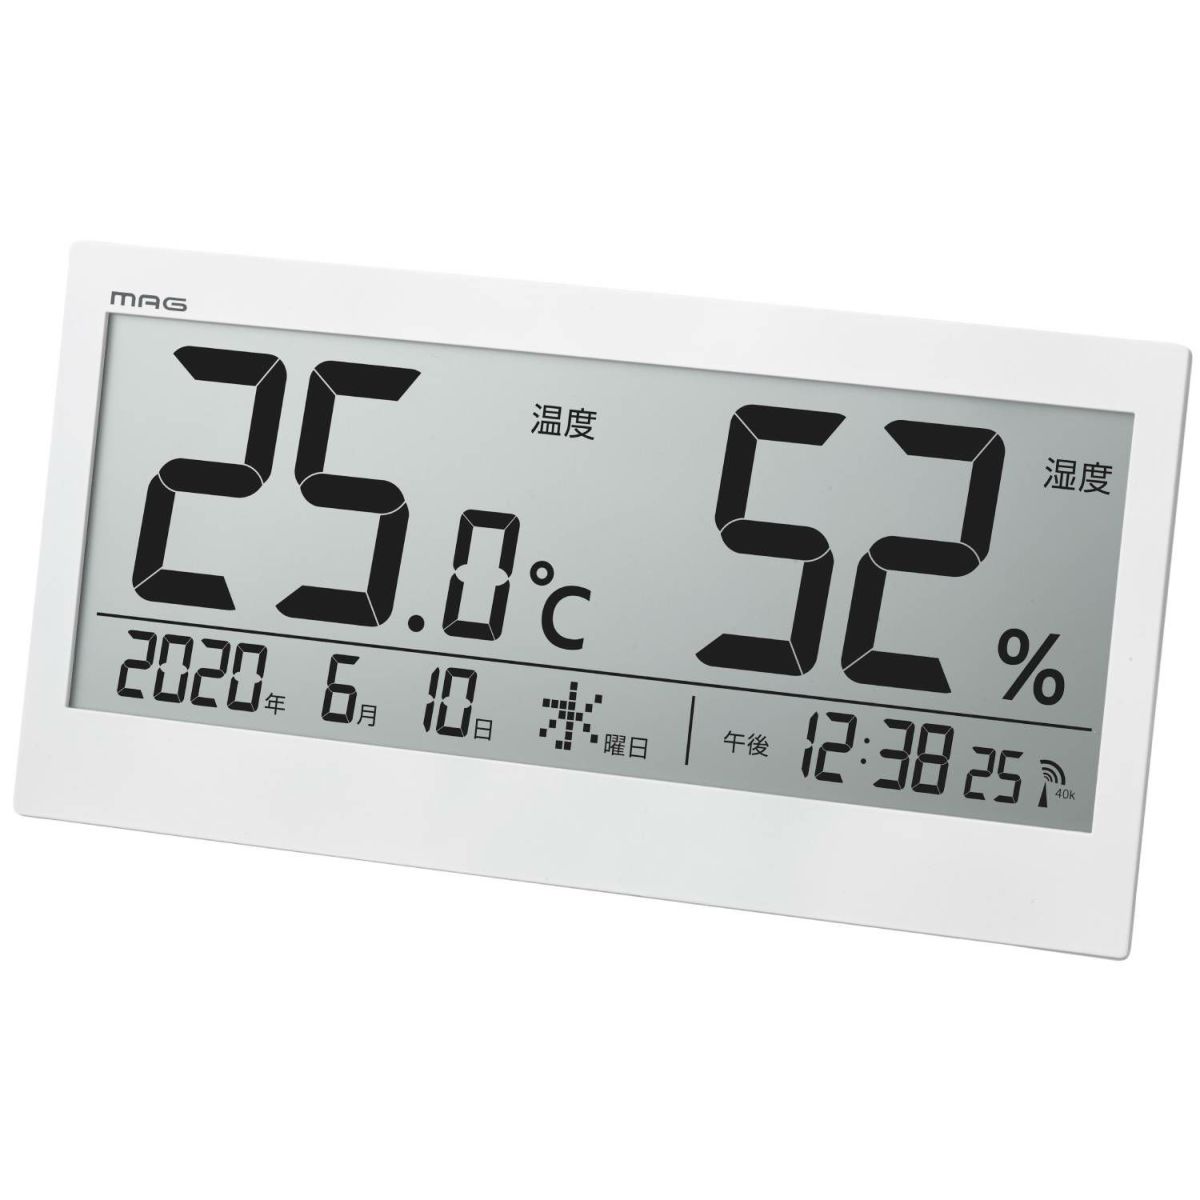 EBM:壁掛け式 温度計 HI-146 8368000 - キッチン、台所用品